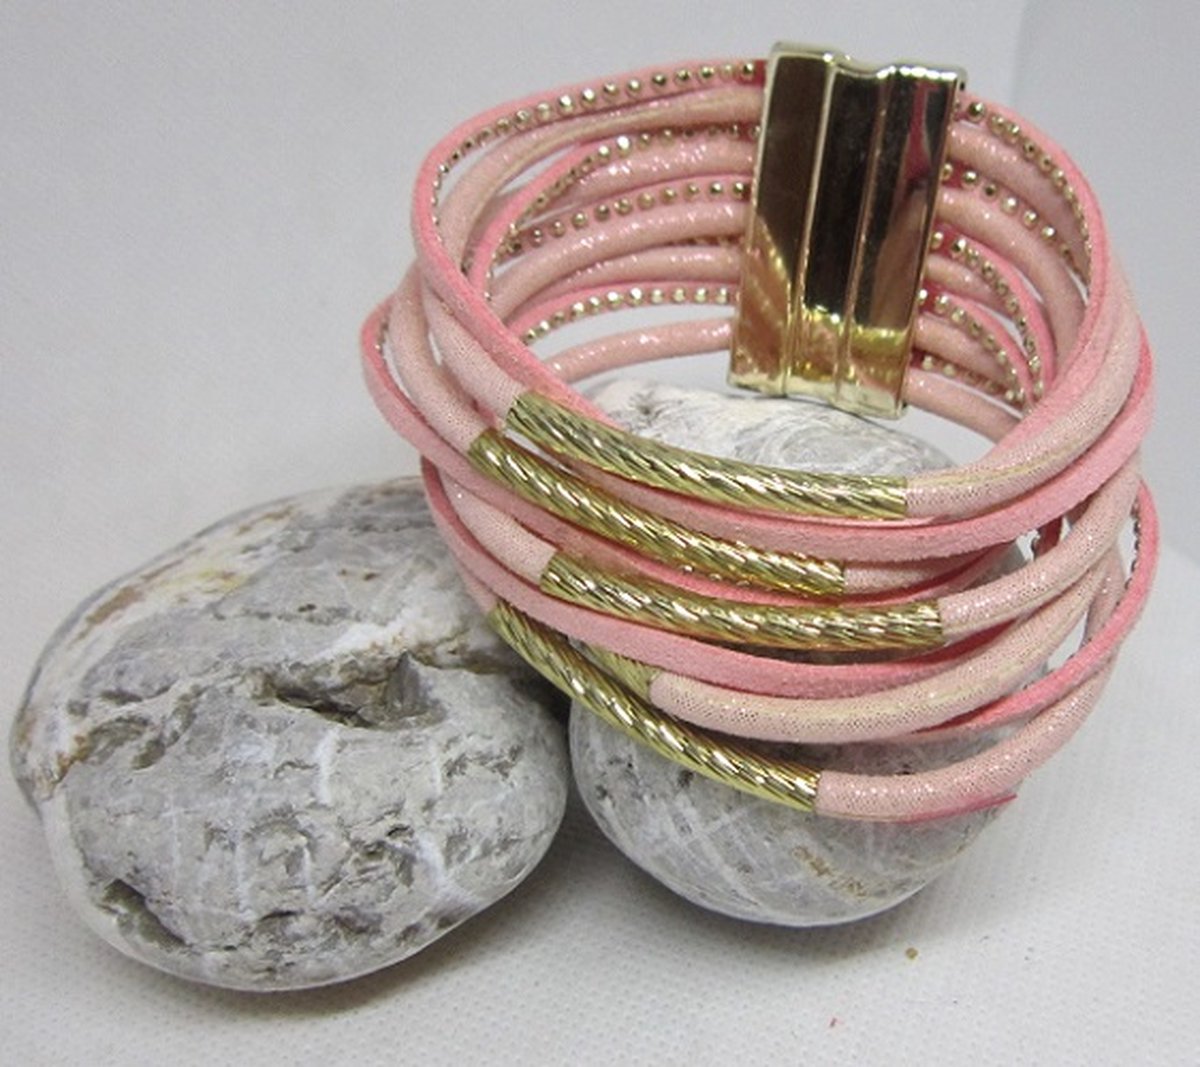 Armband - 10 losse banden - 1 sluiting - leer - stof- Ibiza - Boho - roze - wit - goud - magneet sluiting - lengte 20 cm